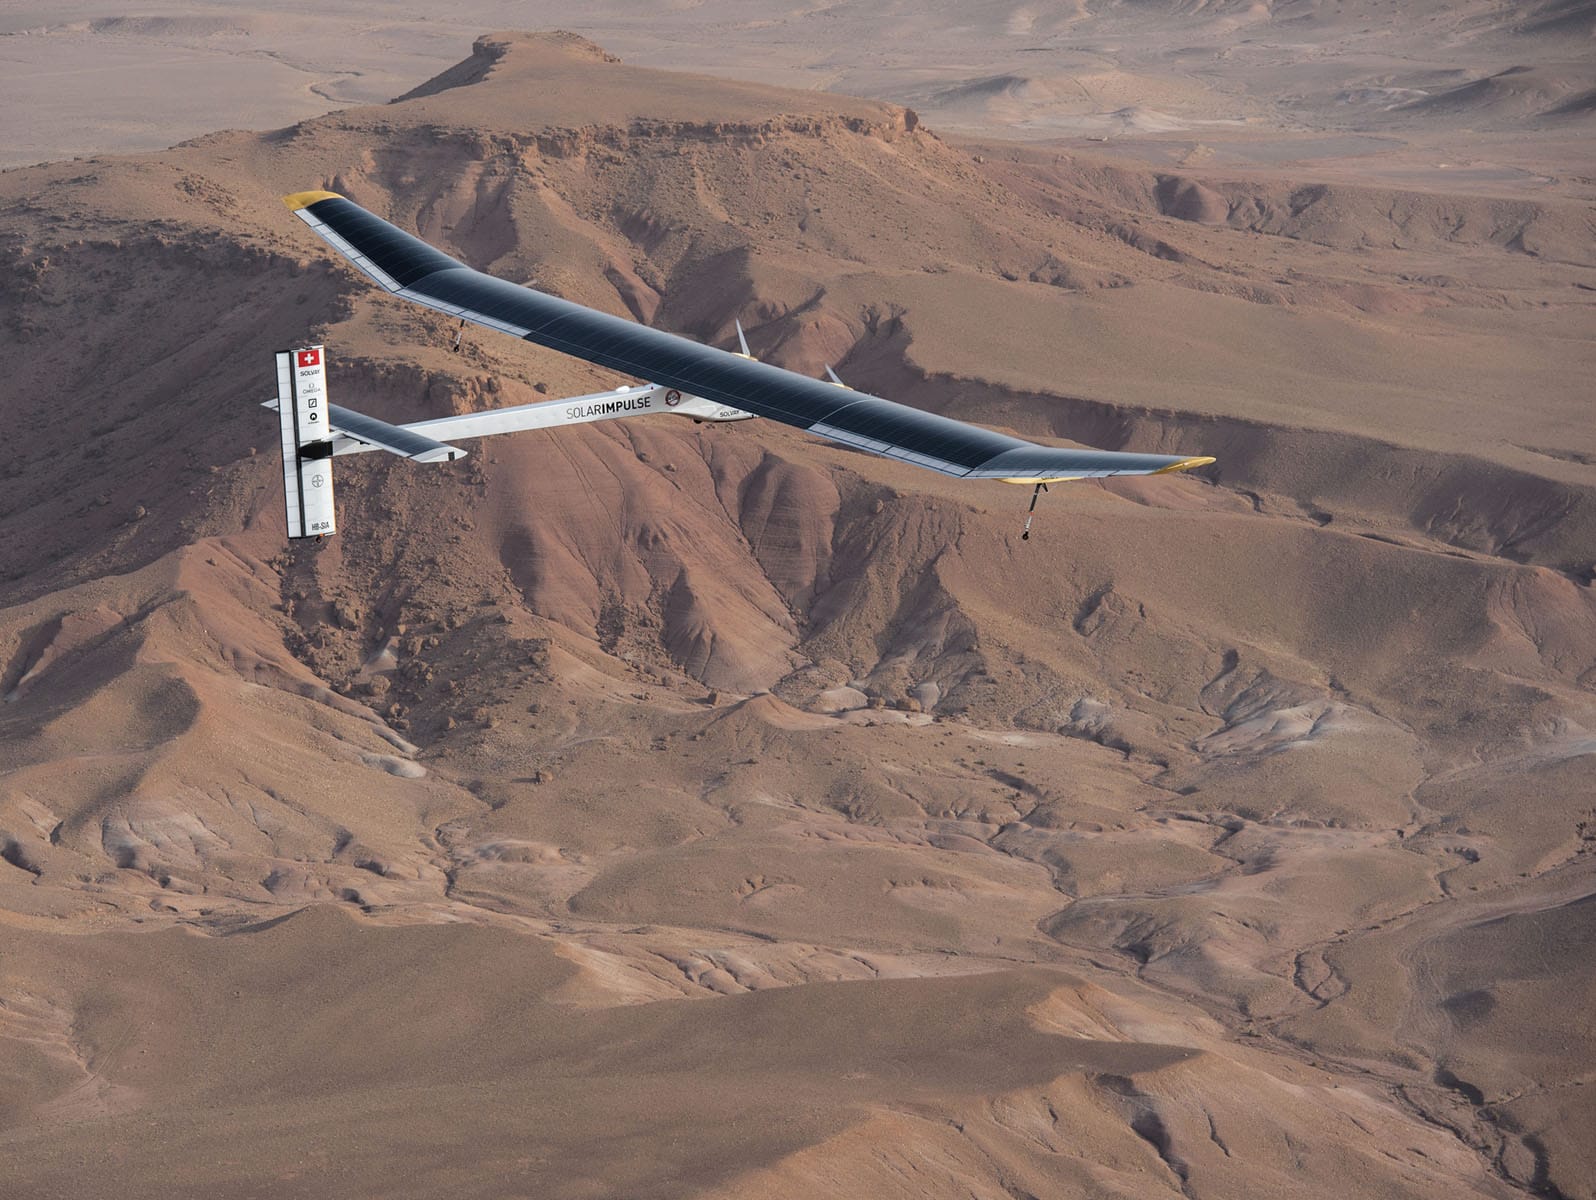 เครื่องบิน Solar impulse เหนือท้องฟ้าของทะเลทรายในโมร็อกโก